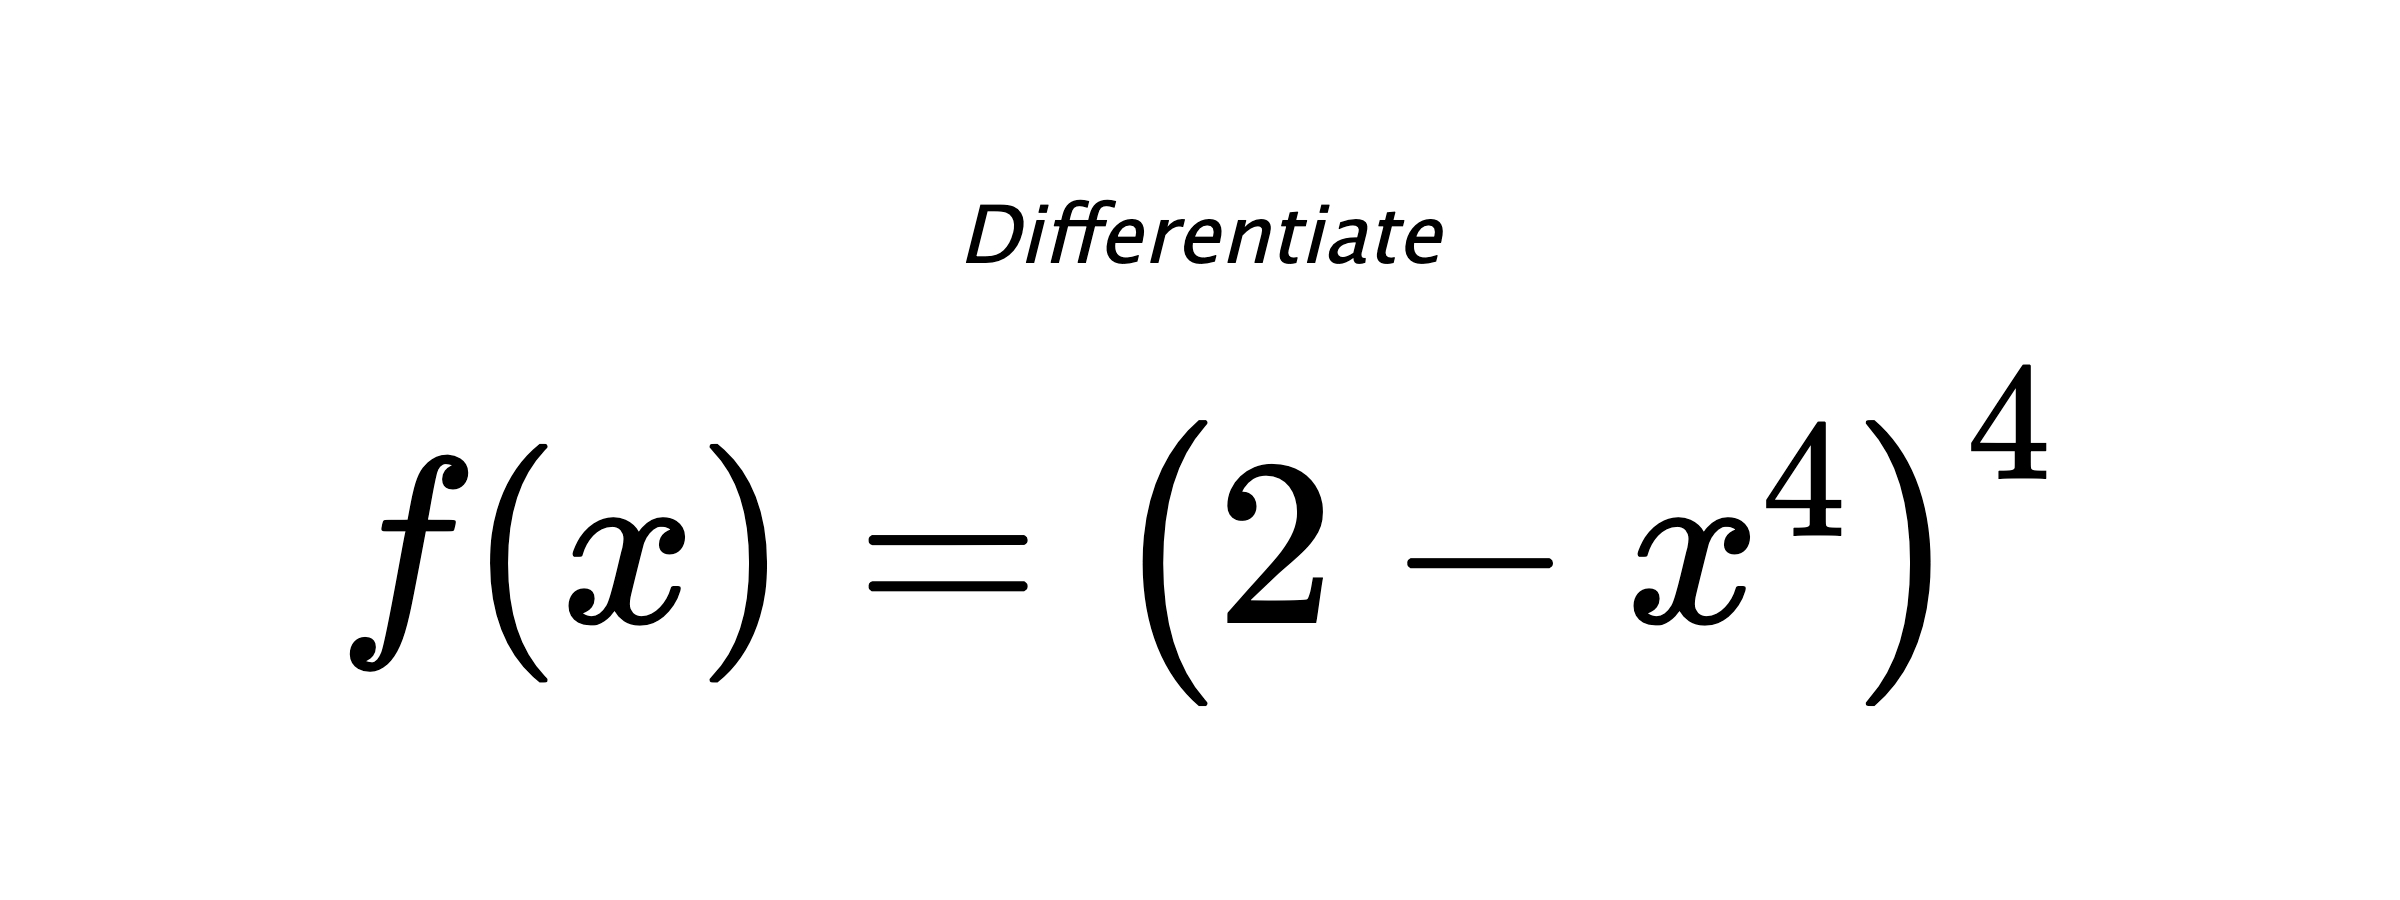 Differentiate $ f(x) = \left(2 - x^{4}\right)^{4} $